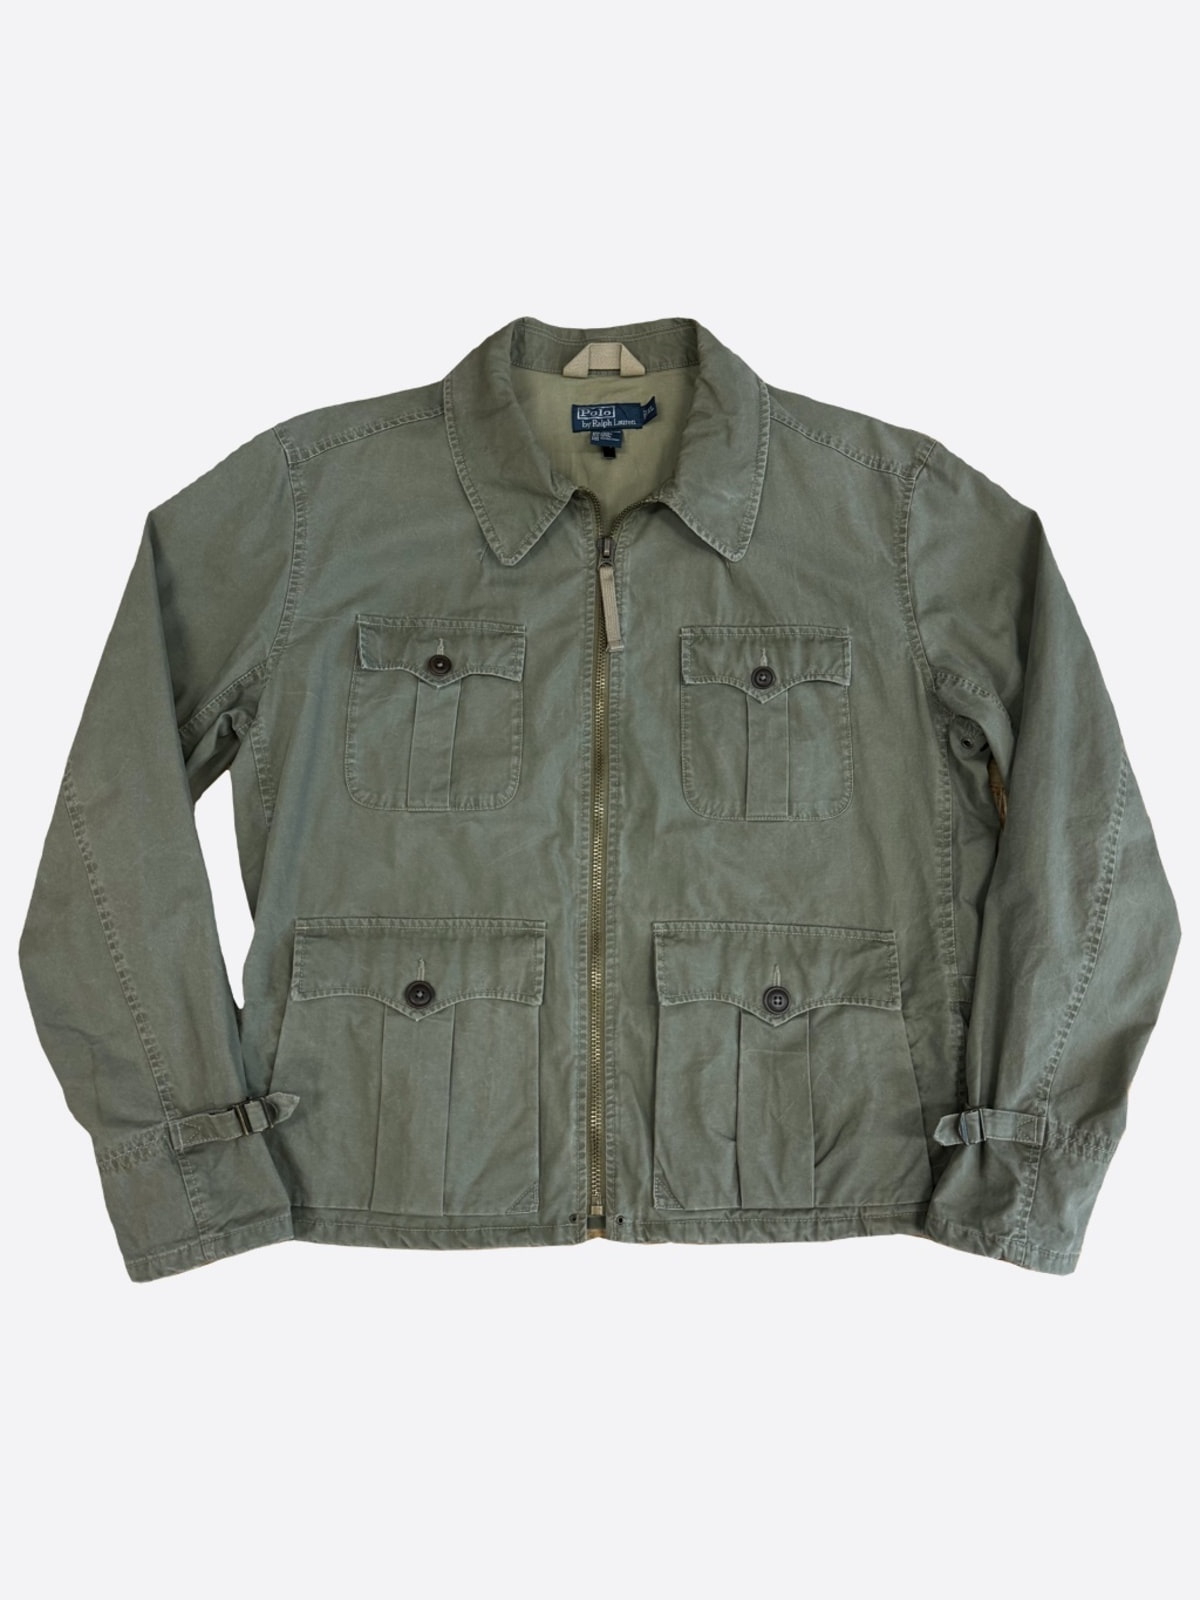 military Jacket (110size)